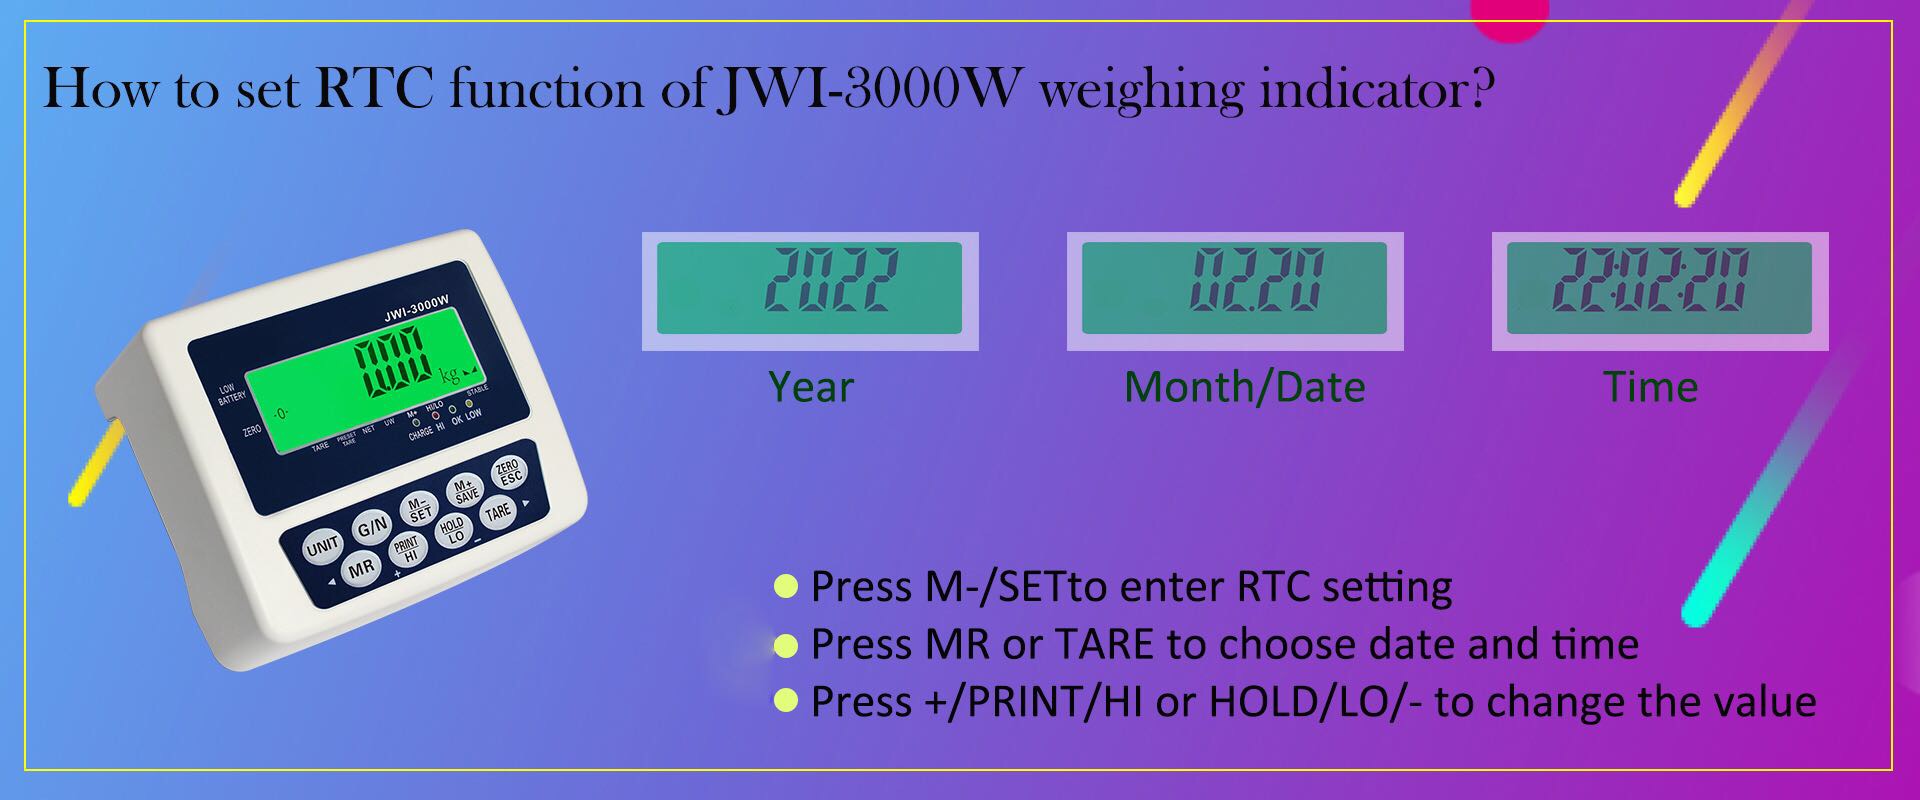 cómo configurar la función RTC del indicador de pesaje industrial JWI-3000W